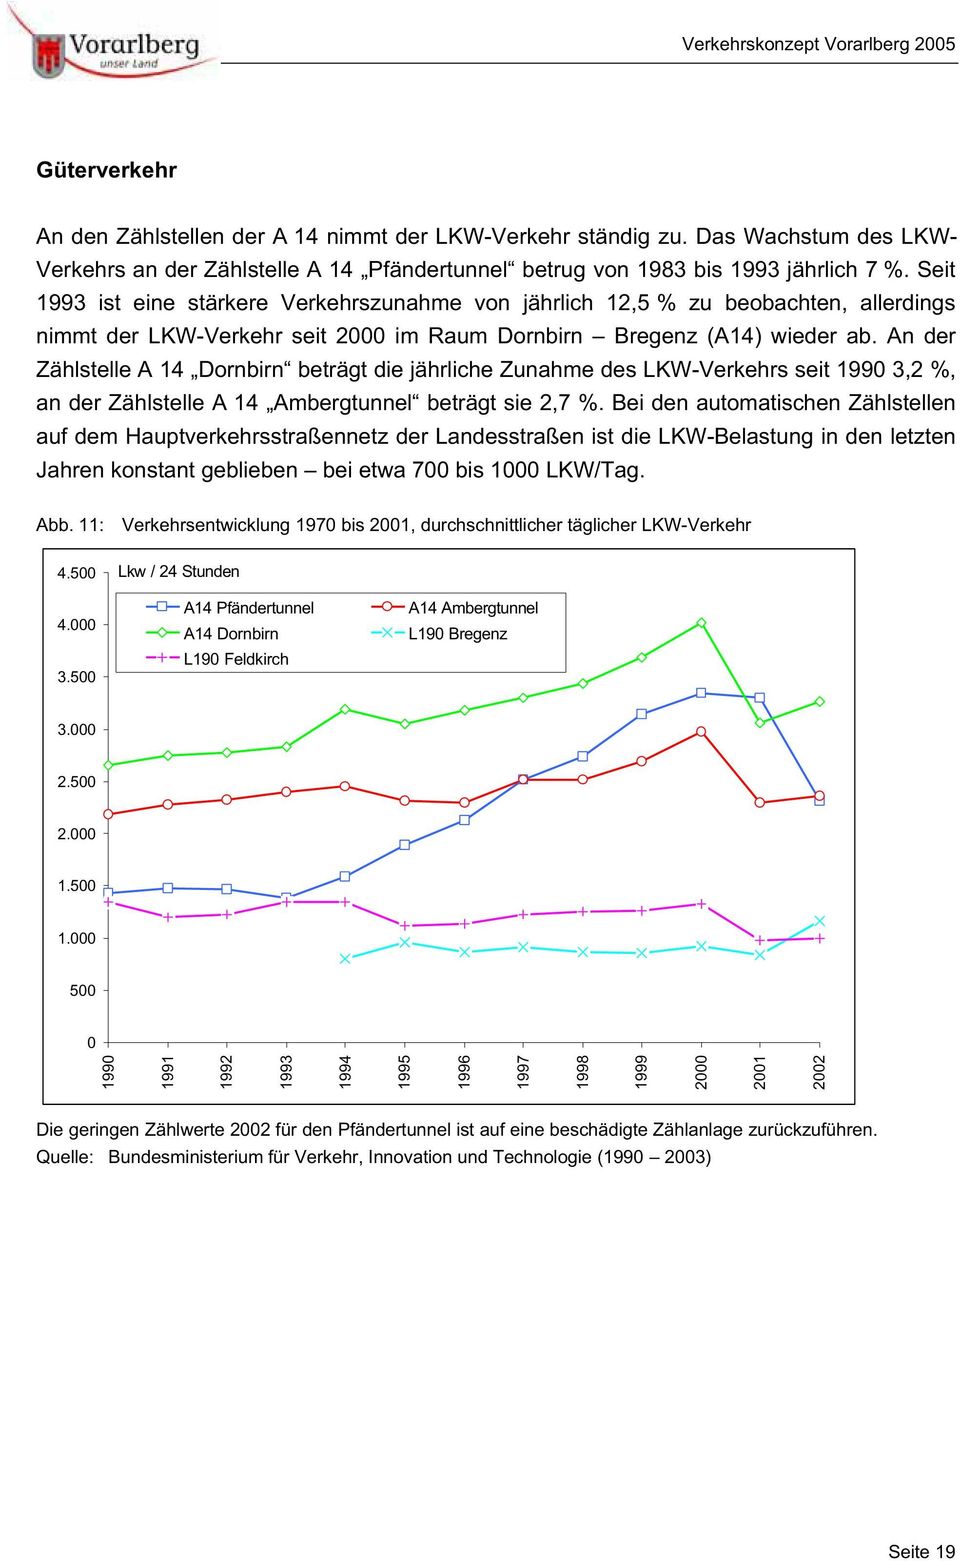 An der Zählstelle A 14 Dornbirn beträgt die jährliche Zunahme des LKW-Verkehrs seit 1990 3,2 %, an der Zählstelle A 14 Ambergtunnel beträgt sie 2,7 %.